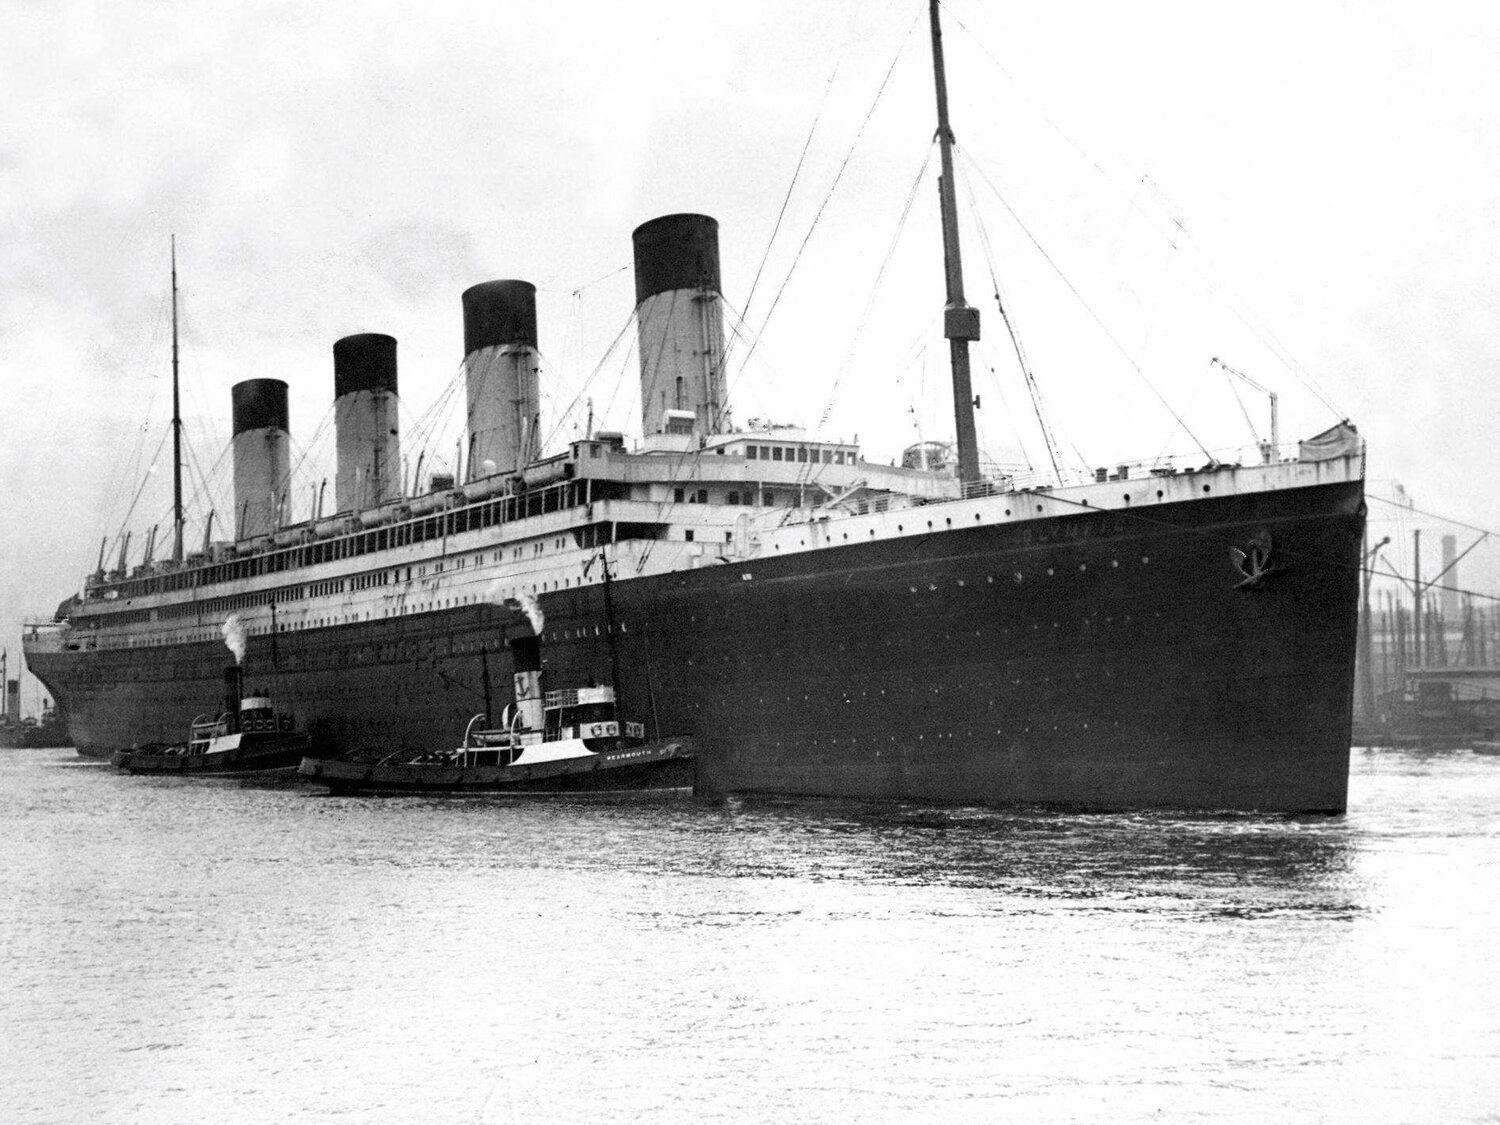 La teoría de la conspiración que defiende que el 'Titanic' nunca se hundió